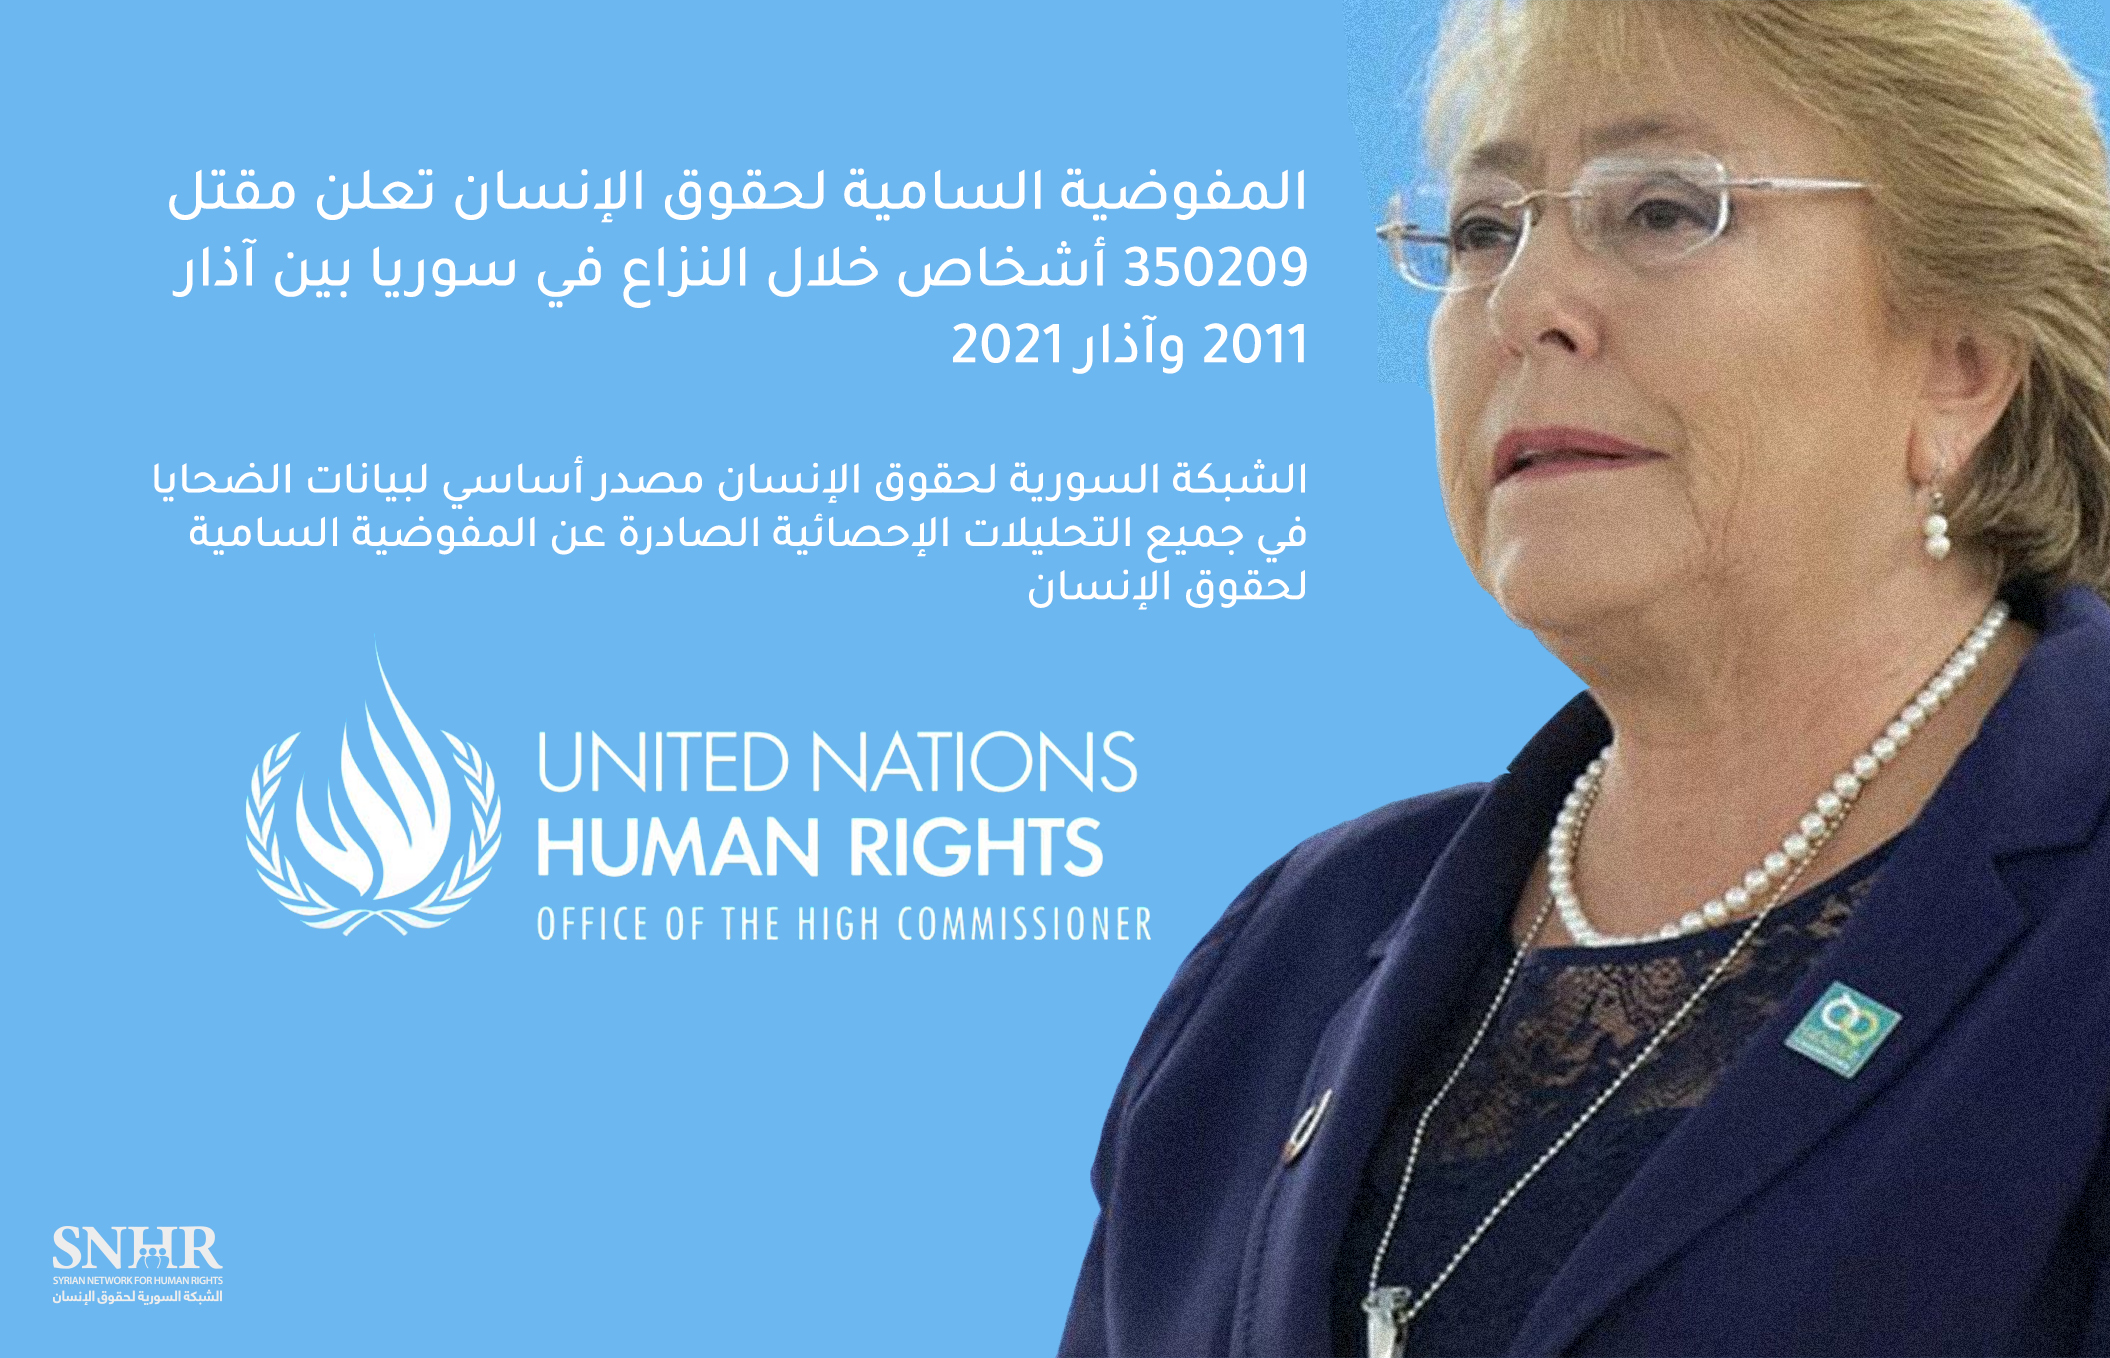 المفوضية السامية لحقوق الإنسان تعلن مقتل 350209 أشخاص خلال النزاع في سوريا بين آذار 2011 وآذار 2021